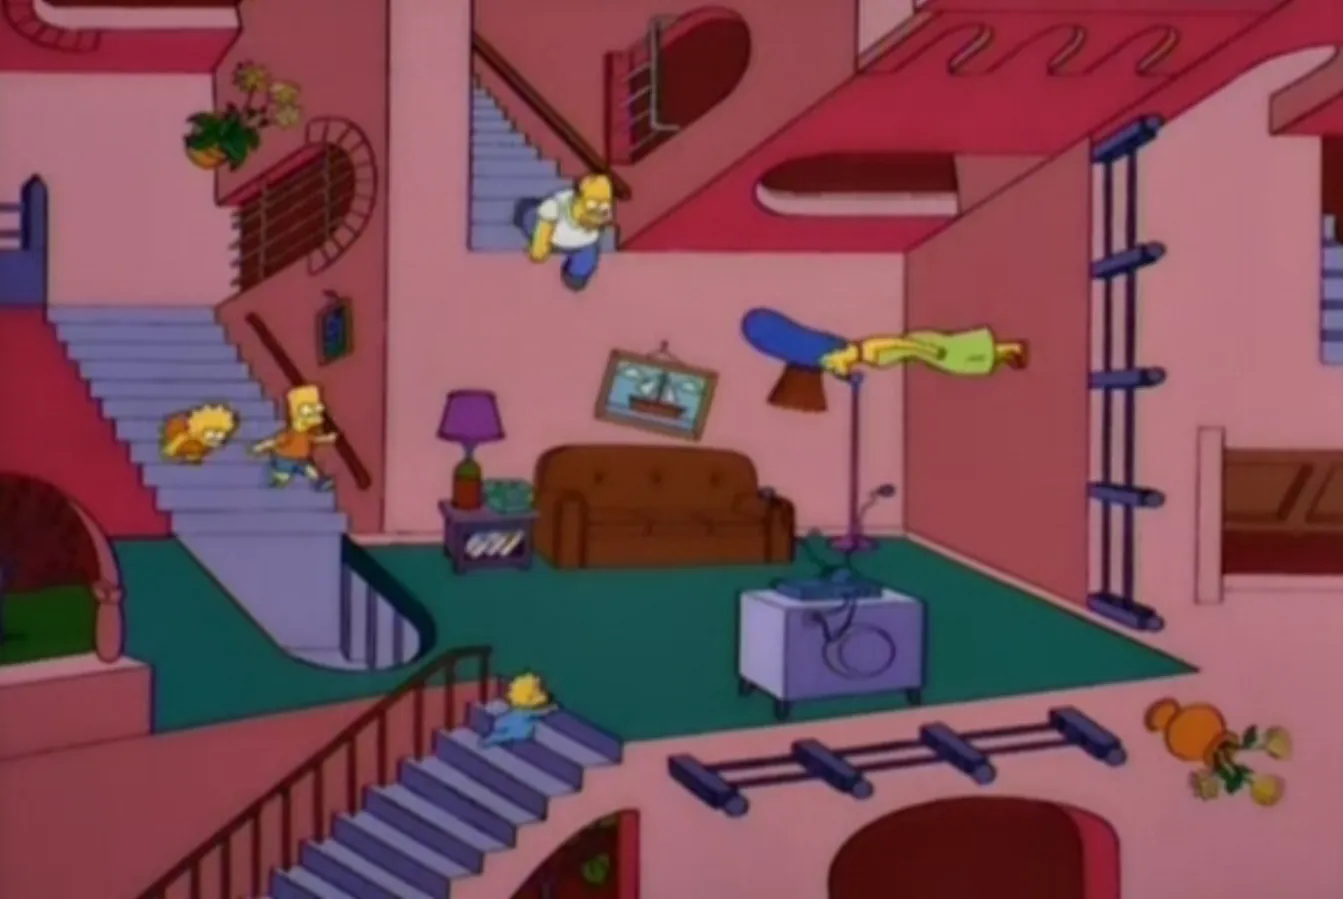 https://simpsons.fandom.com/wiki/M.C._Escher_couch_gag?file=M.C._Eshter.png Source: Simpsons Wikia